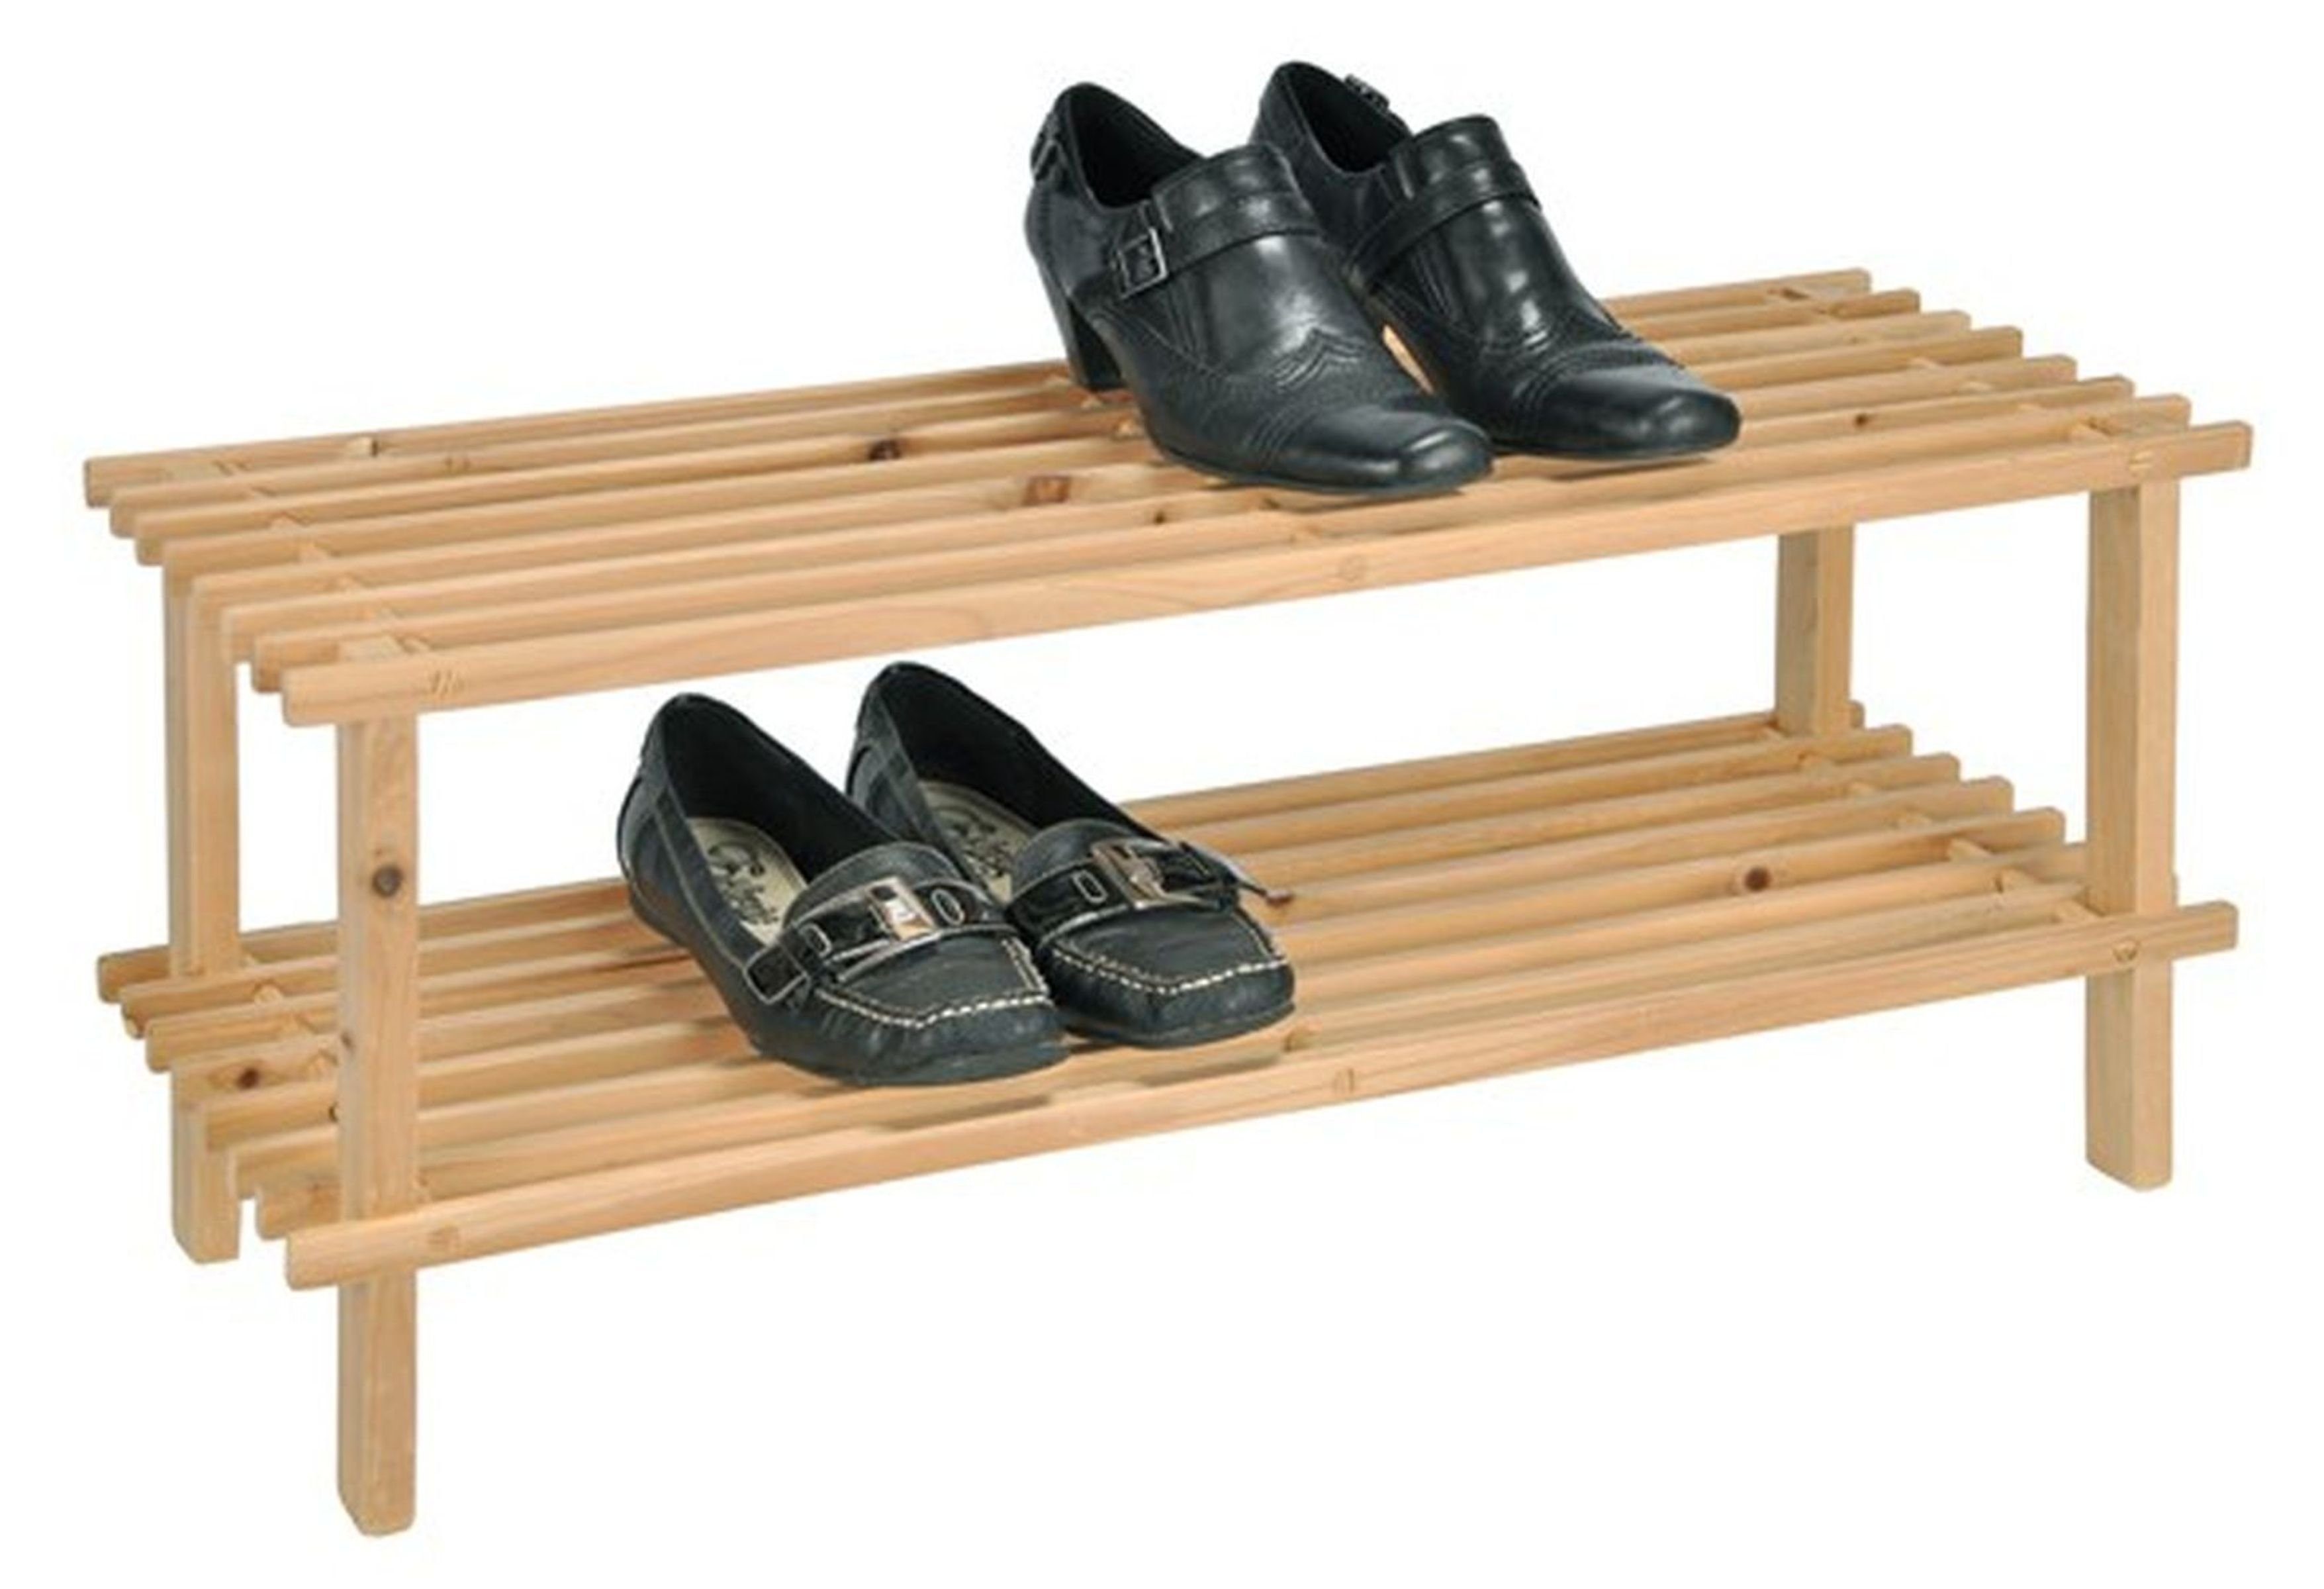 Schuhregal Holzregal Schuhständer Schuhablage mit Gravidus Schuhregal 2 Böden Holz aus